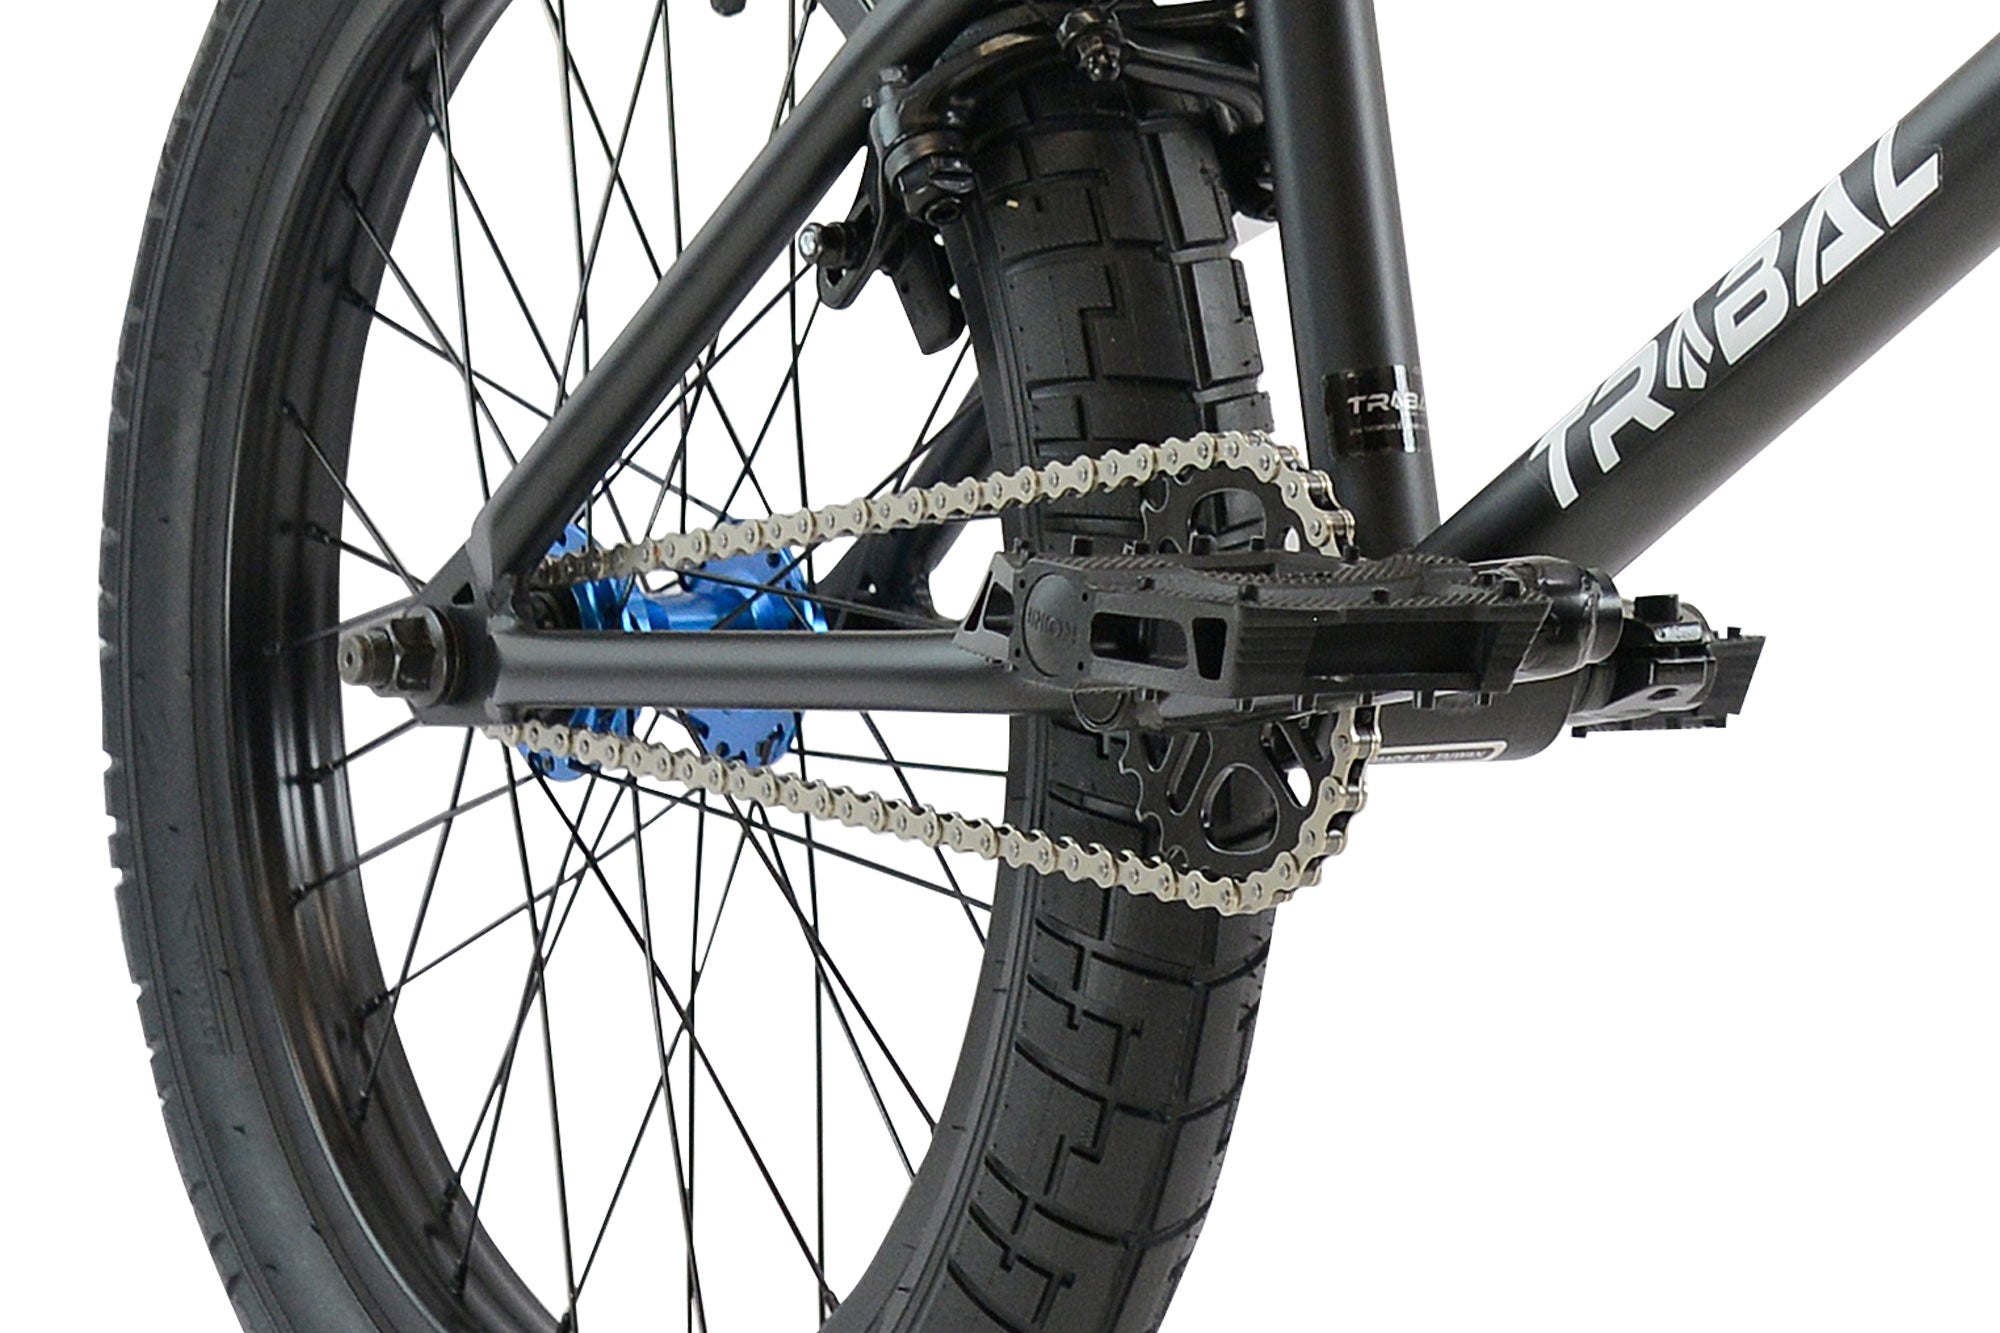 Tribal Dragon BMX Bike - Matte Black / Blue Parts